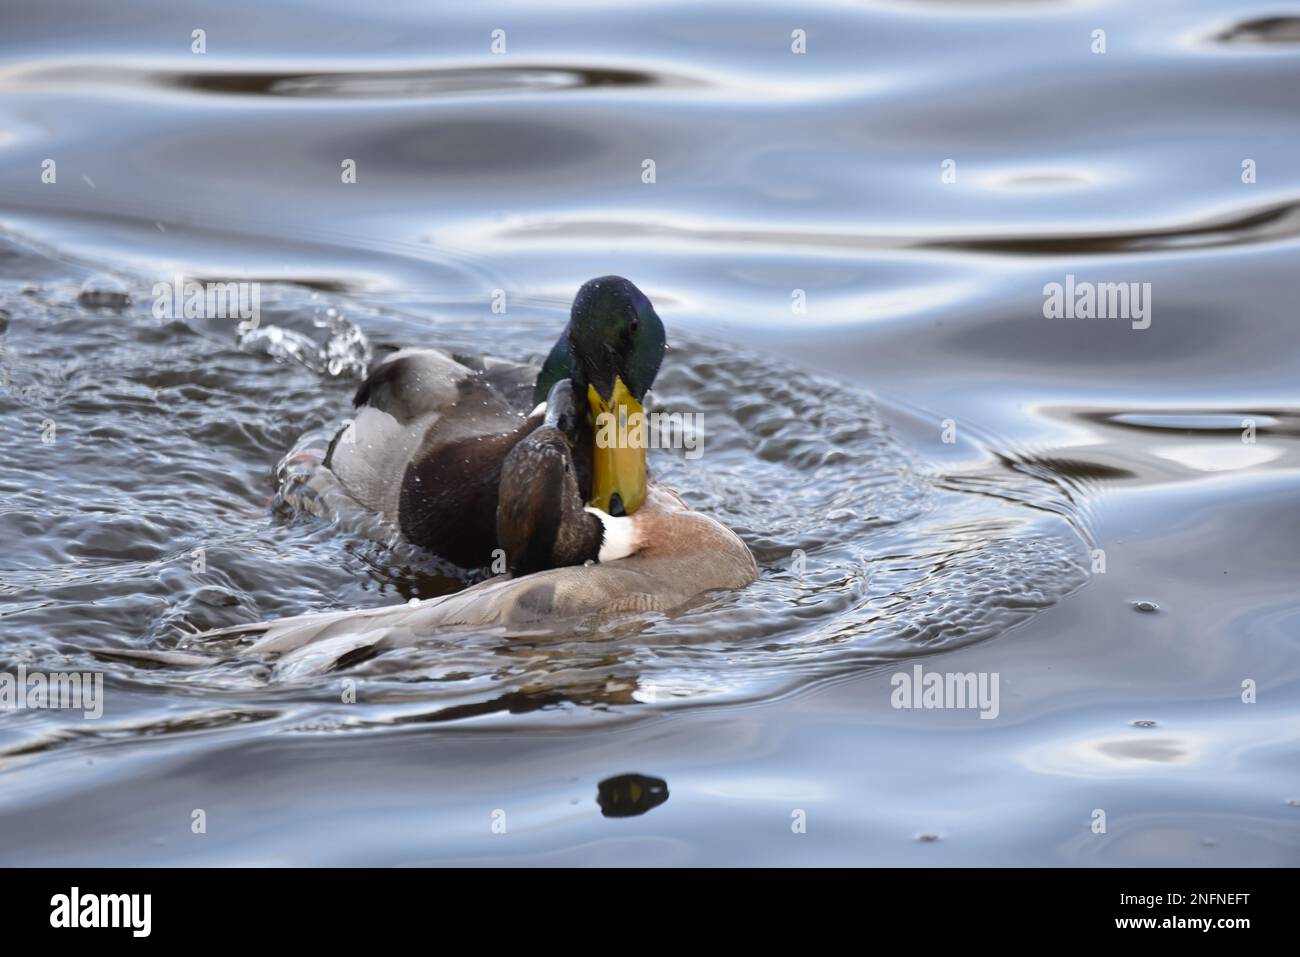 Comportamento di accoppiamento tra Drake Mallard Duck (Anas platyrhynchos) e Northern Pintail x Gadwall Hybrid Duck (Anas acuta x Anas strepera) nel gennaio del Regno Unito Foto Stock